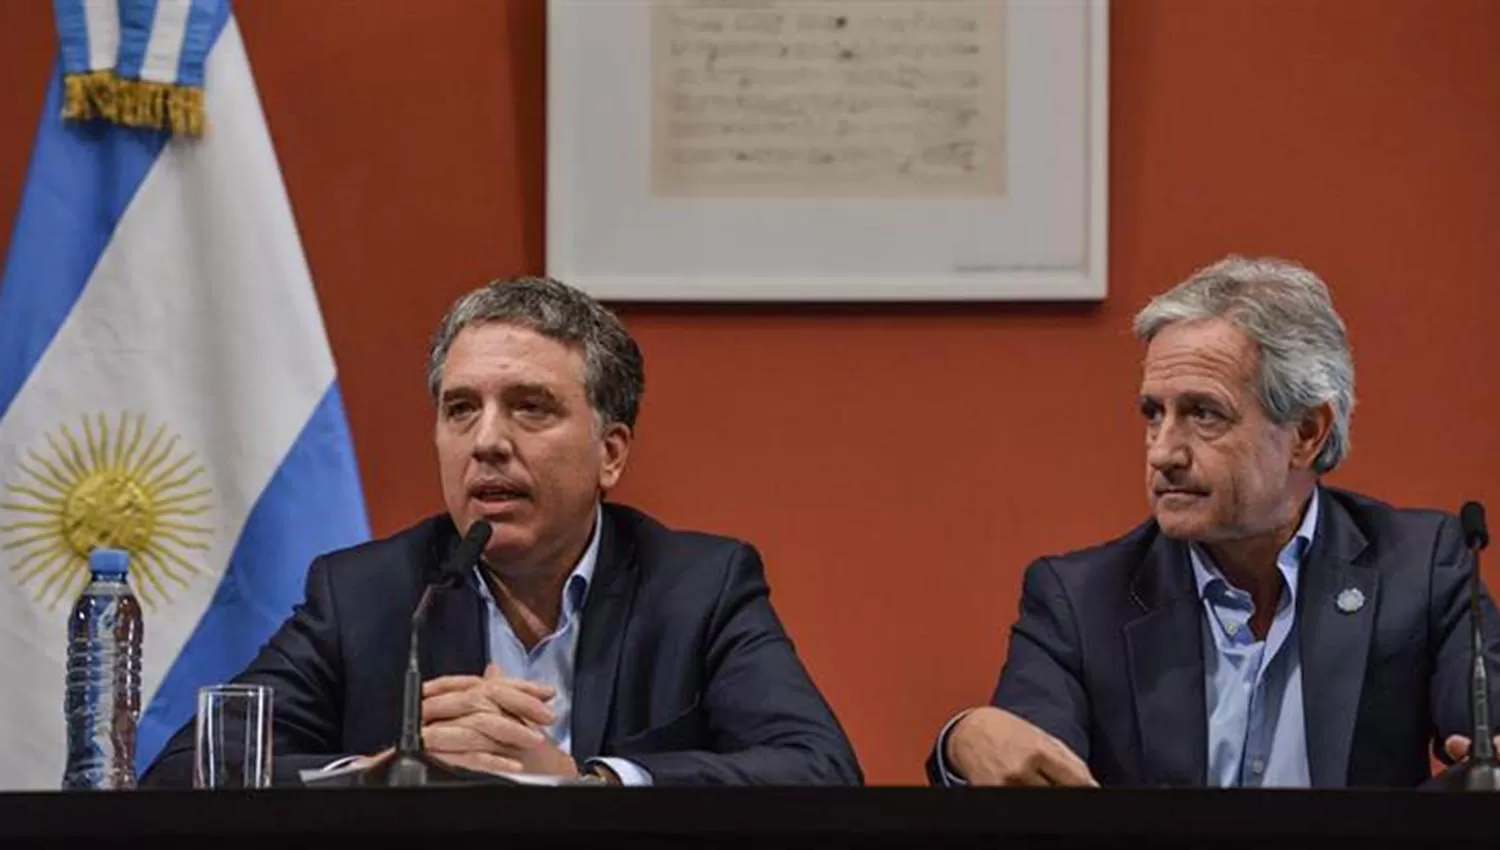 MINISTROS. Nicolás Dujovne y Andrés Ibarra. FOTO TOMADA DE AMBITO.COM